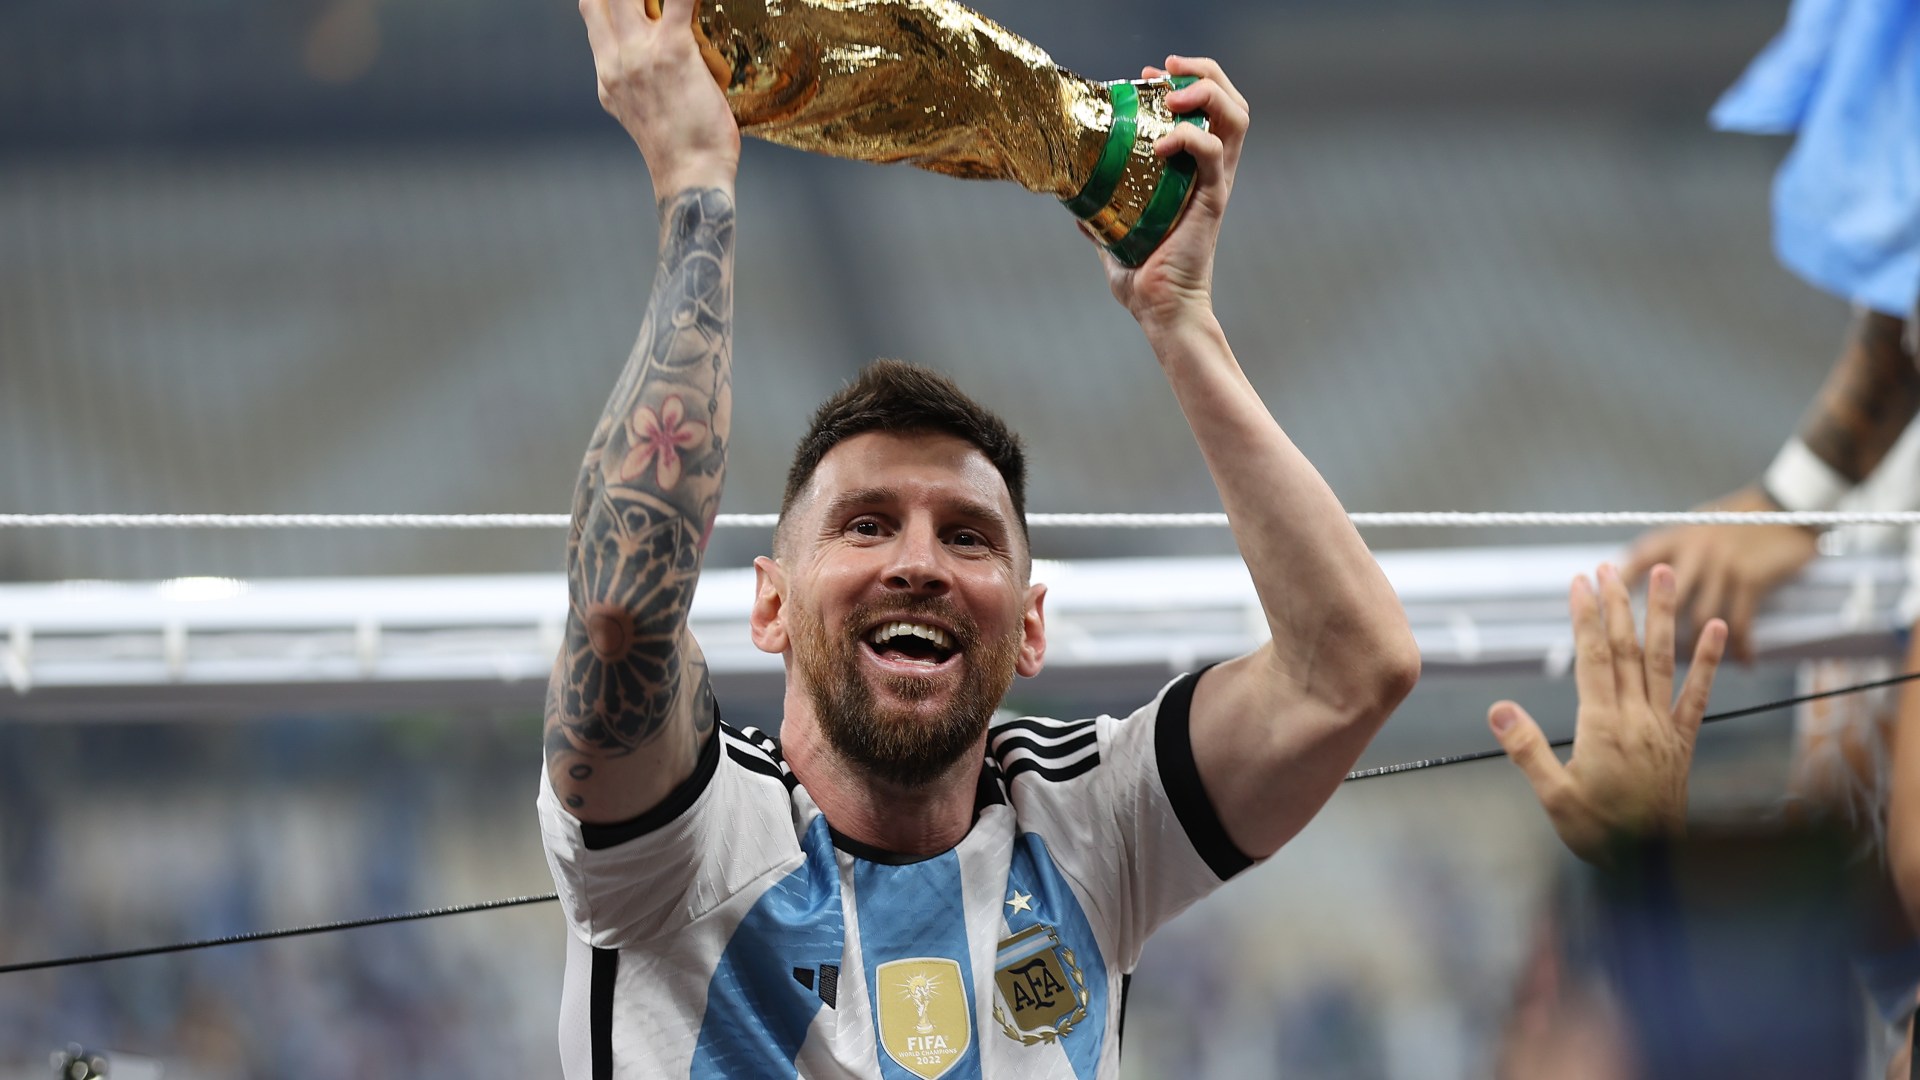 Thắng lớn của Argentina tại World Cup sẽ đem đến cảm giác vô cùng phấn khích cho người hâm mộ bóng đá. Khám phá hình ảnh liên quan đến lịch sử đó và tìm hiểu về chiến thắng đầy kịch tính của Argentina.